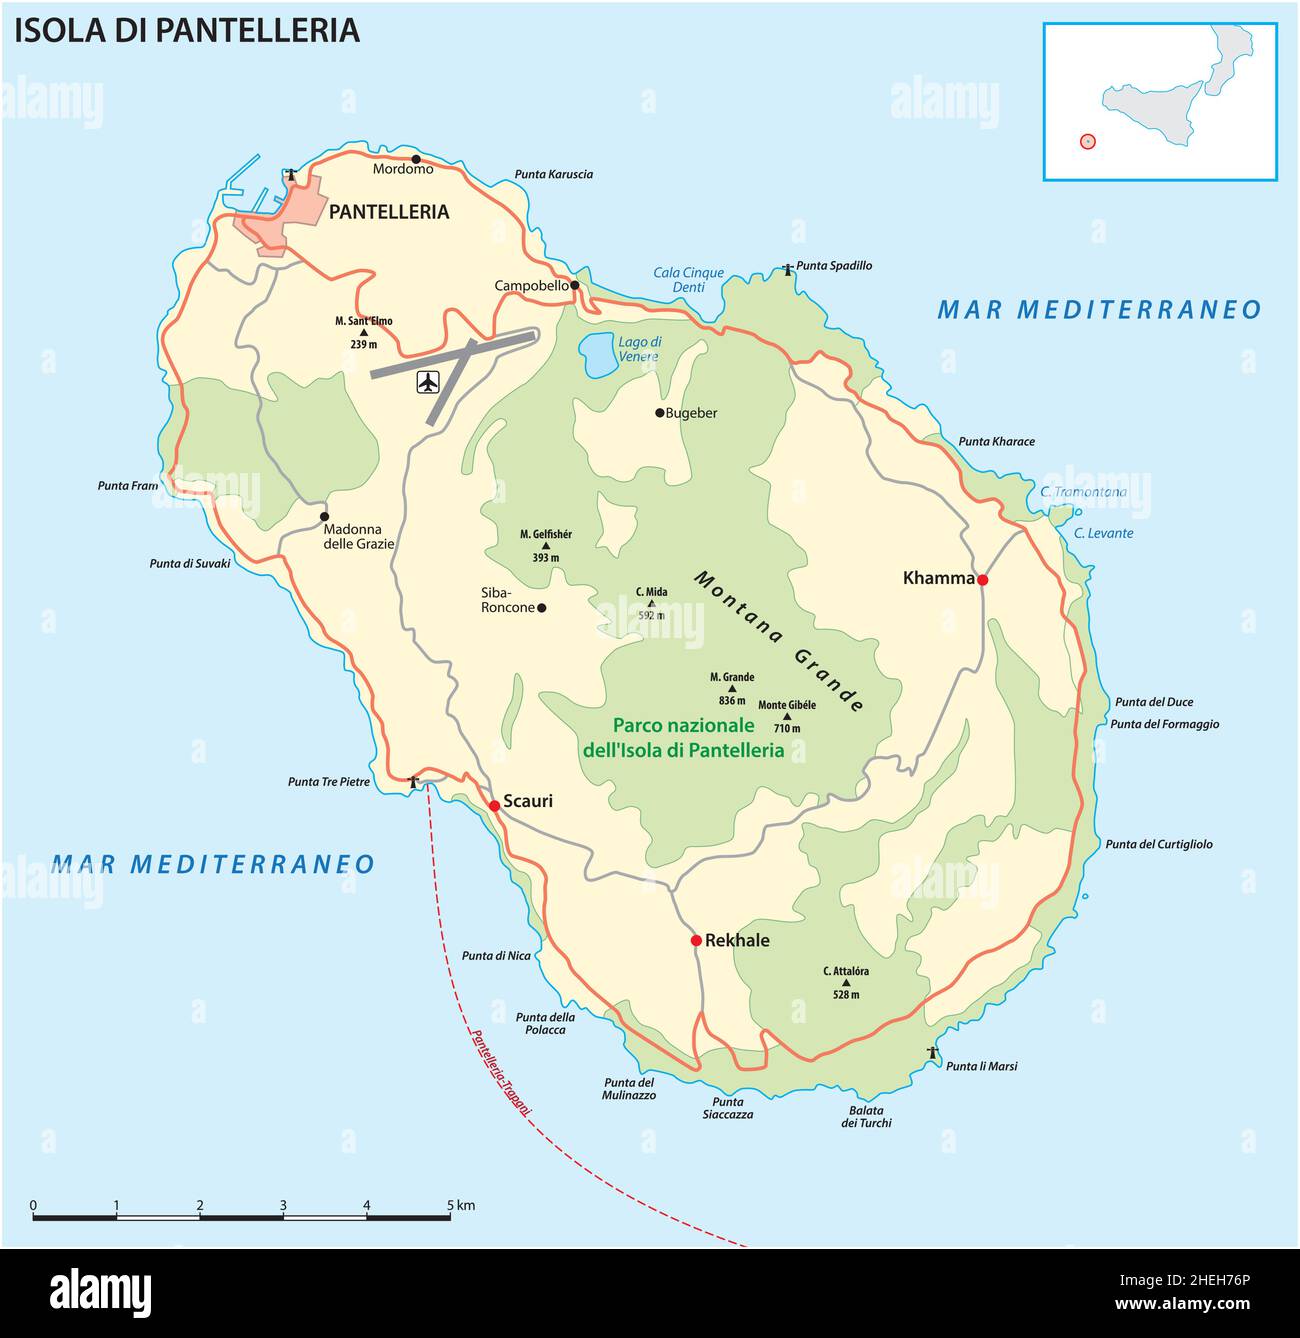 Mappa stradale vettoriale dell'isola vulcanica italiana di Pantelleria ...